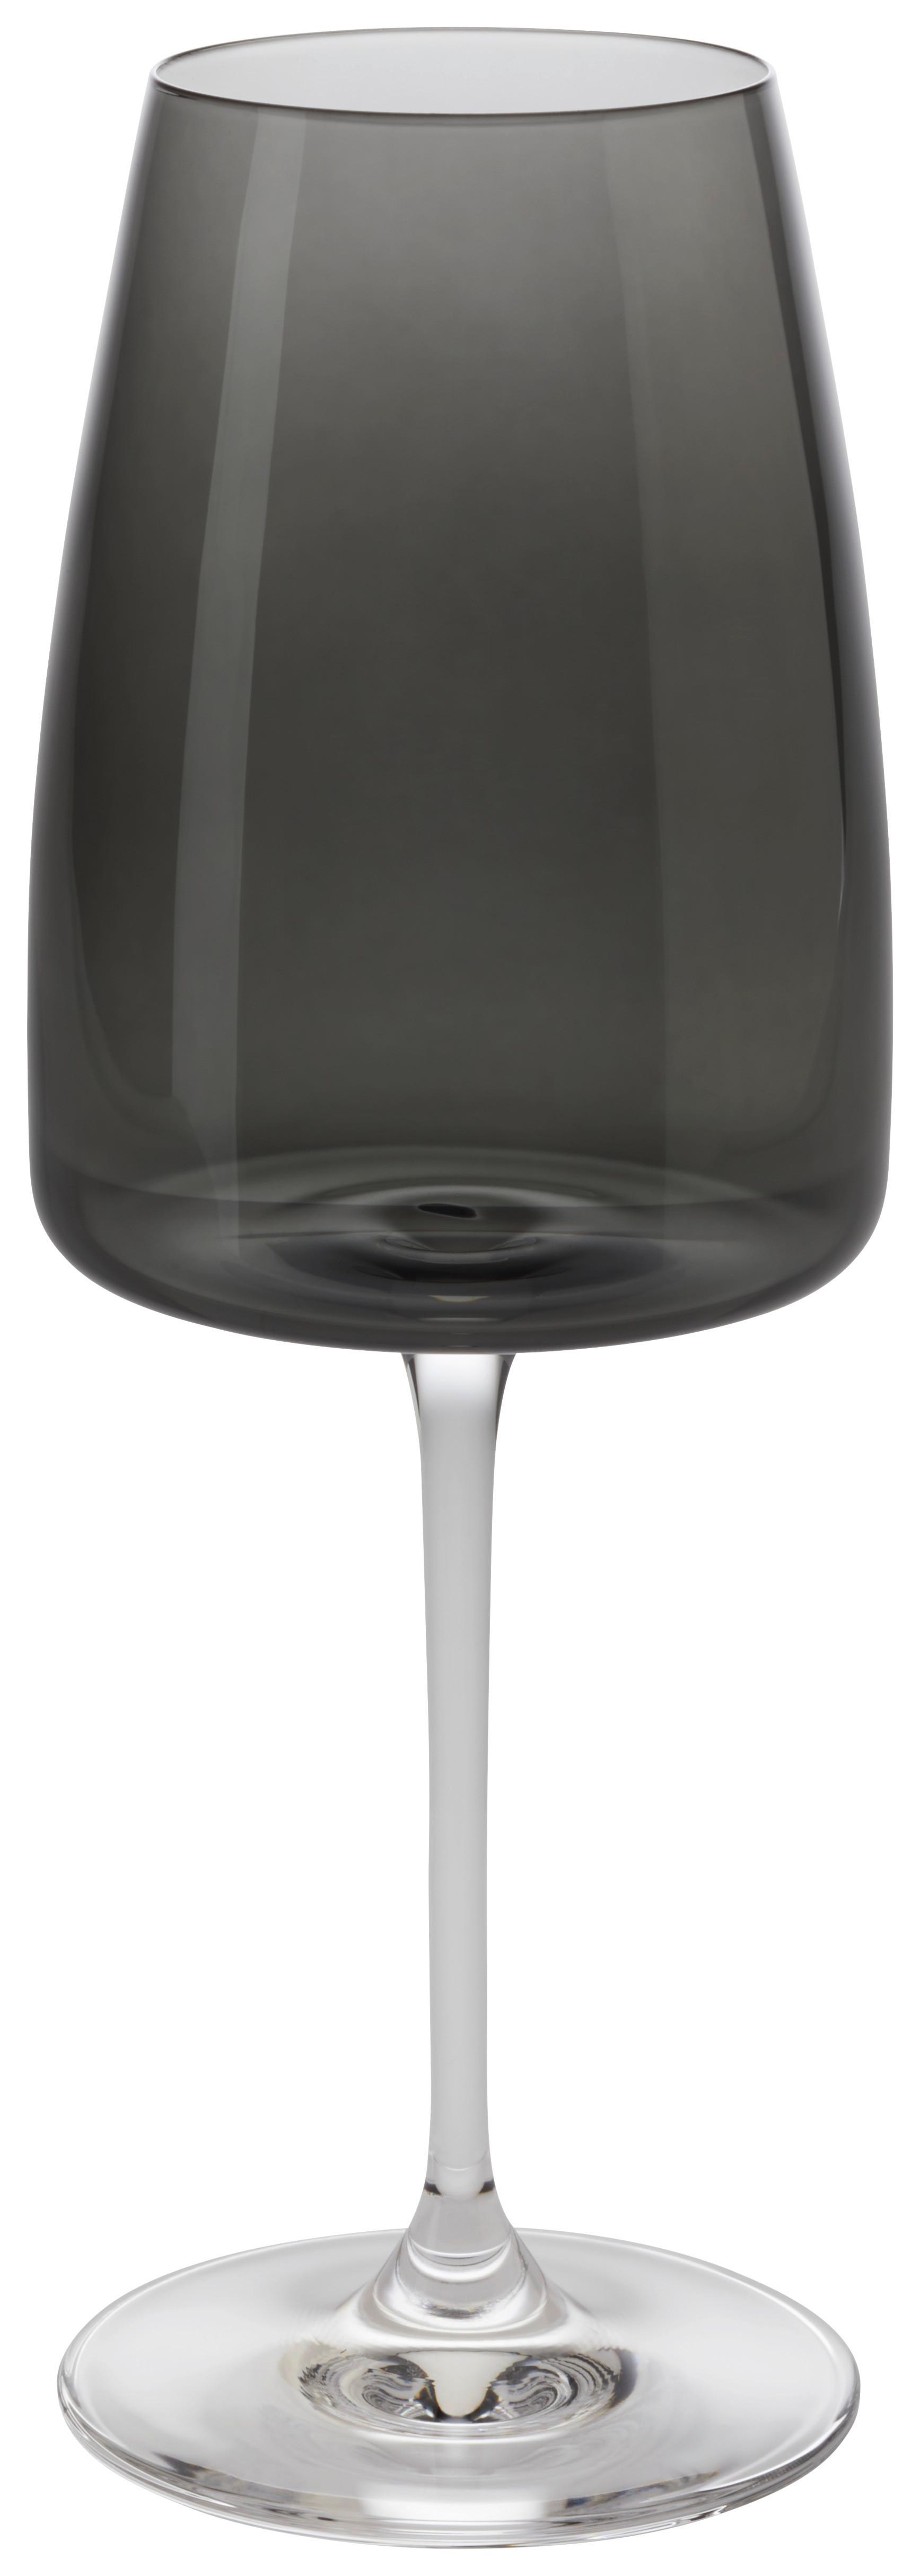 Weißweinglas Nicki ca. 420ml - Schwarz, Modern, Glas (7,9/22cm) - Premium Living